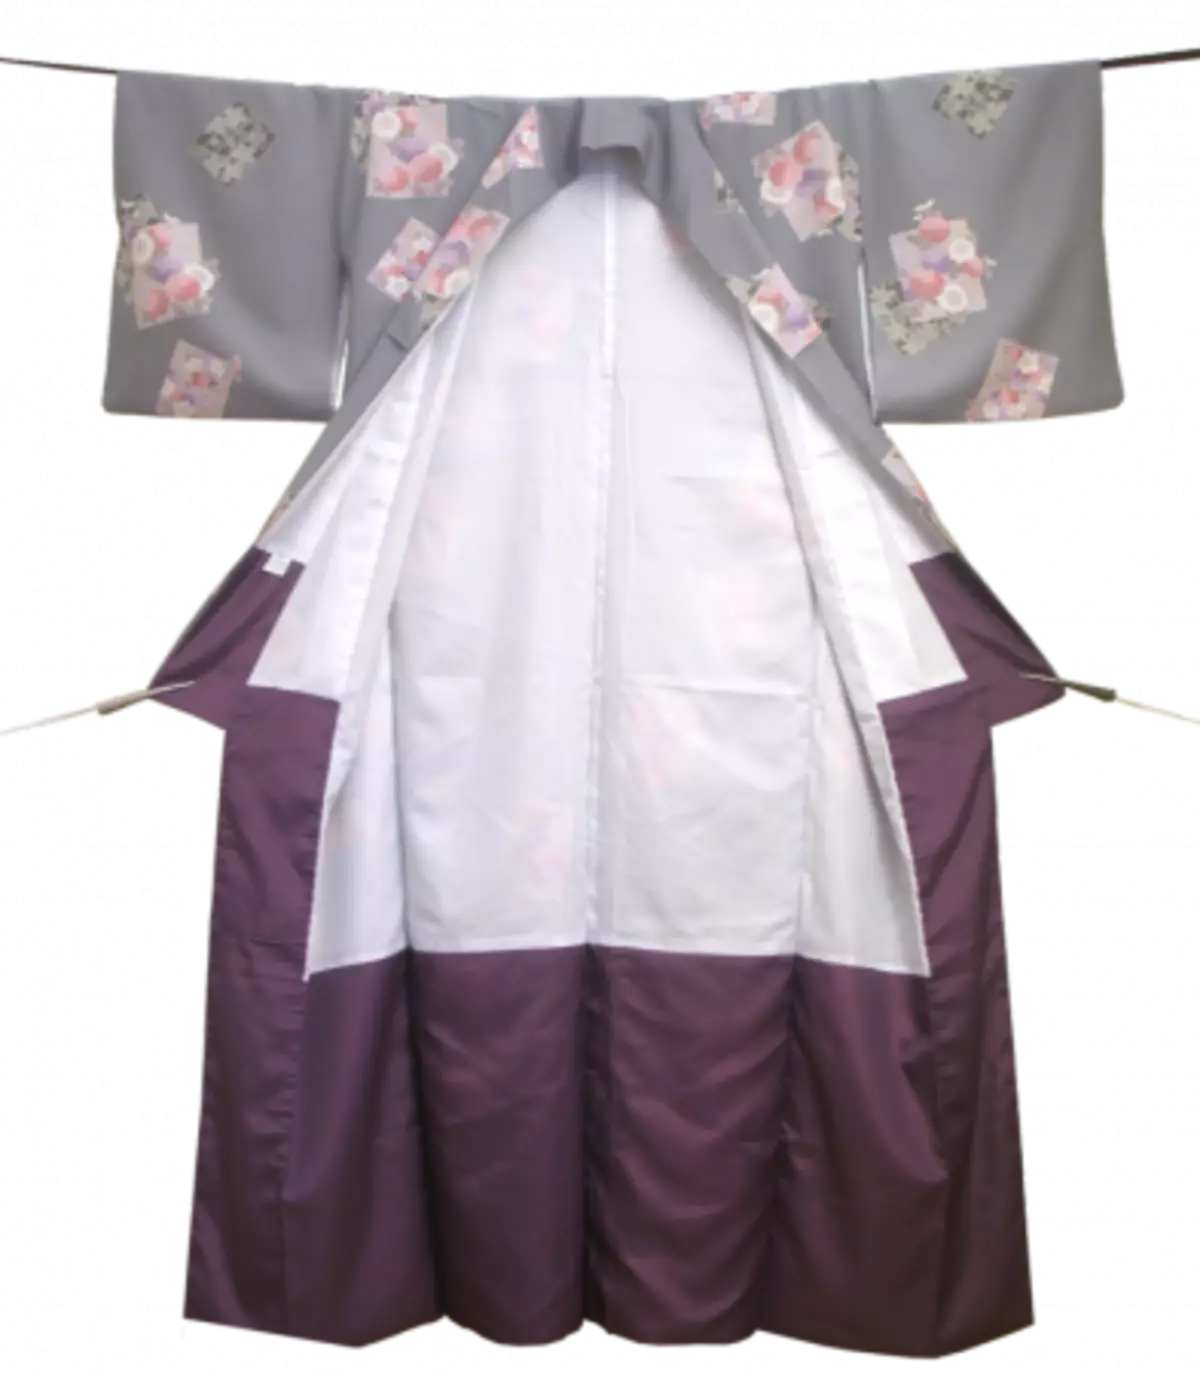 Giunsa ang pagtahi sa usa ka Japanese robe - Kimono buhaton kini sa imong kaugalingon: Mga sinina sa sumbanan ug kasaysayan